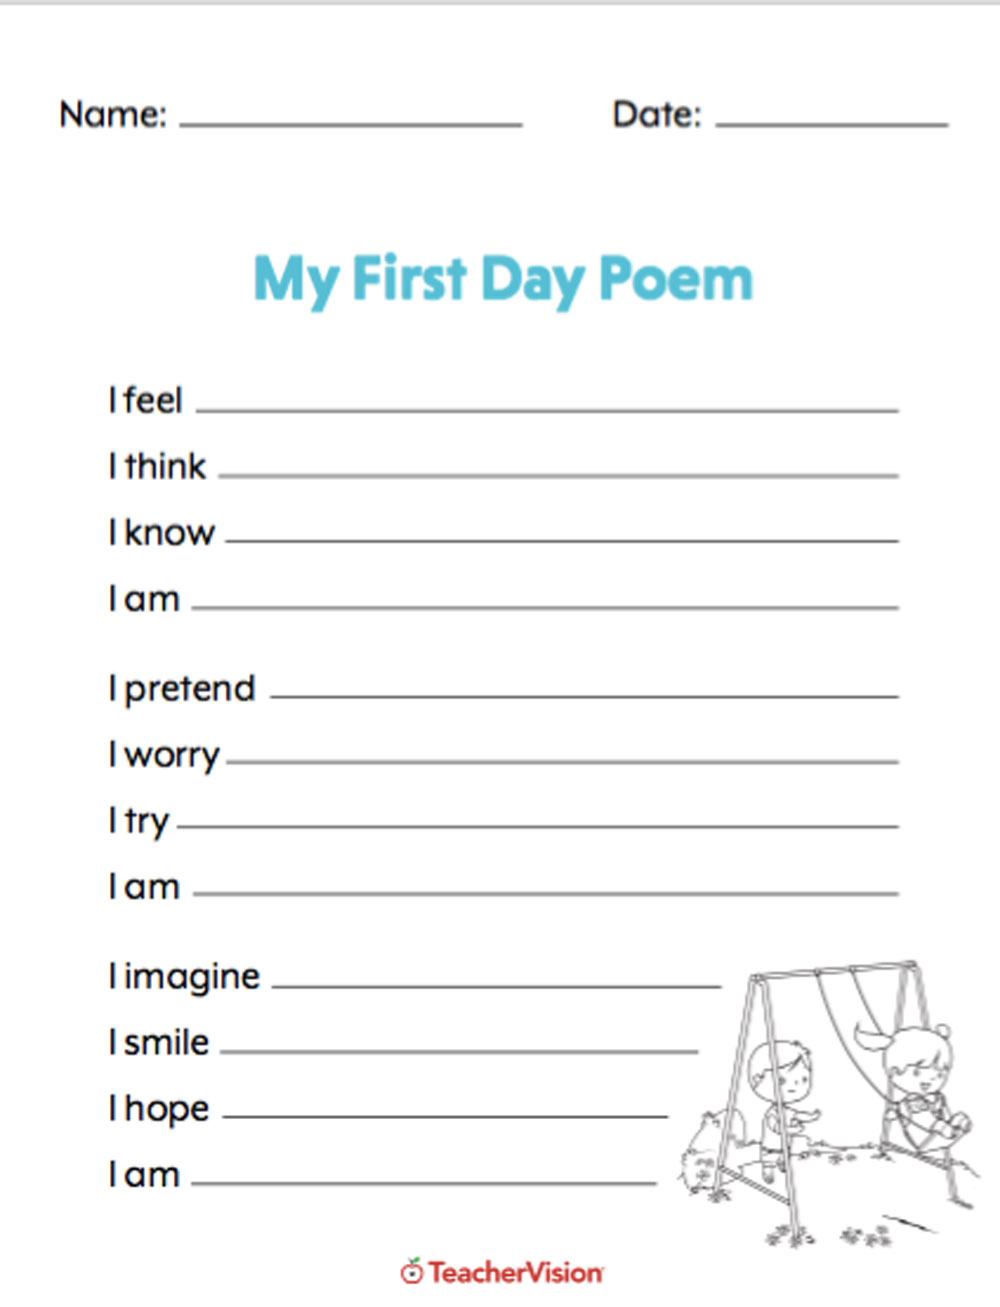 Zum kennenlernen gedicht